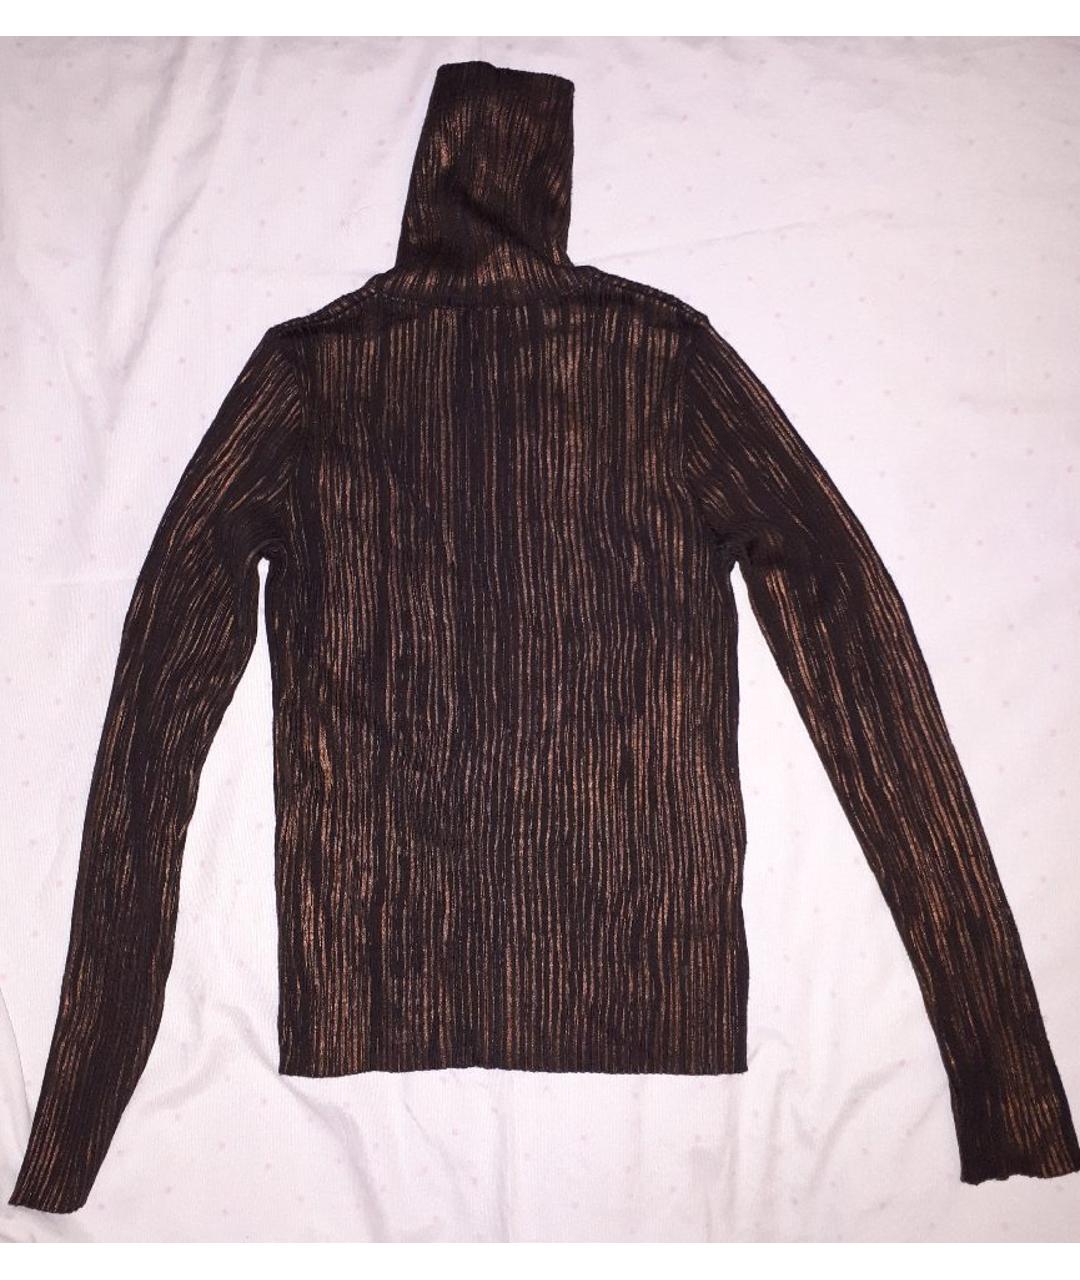 TRUSSARDI JEANS Коричневый шерстяной джемпер / свитер, фото 2